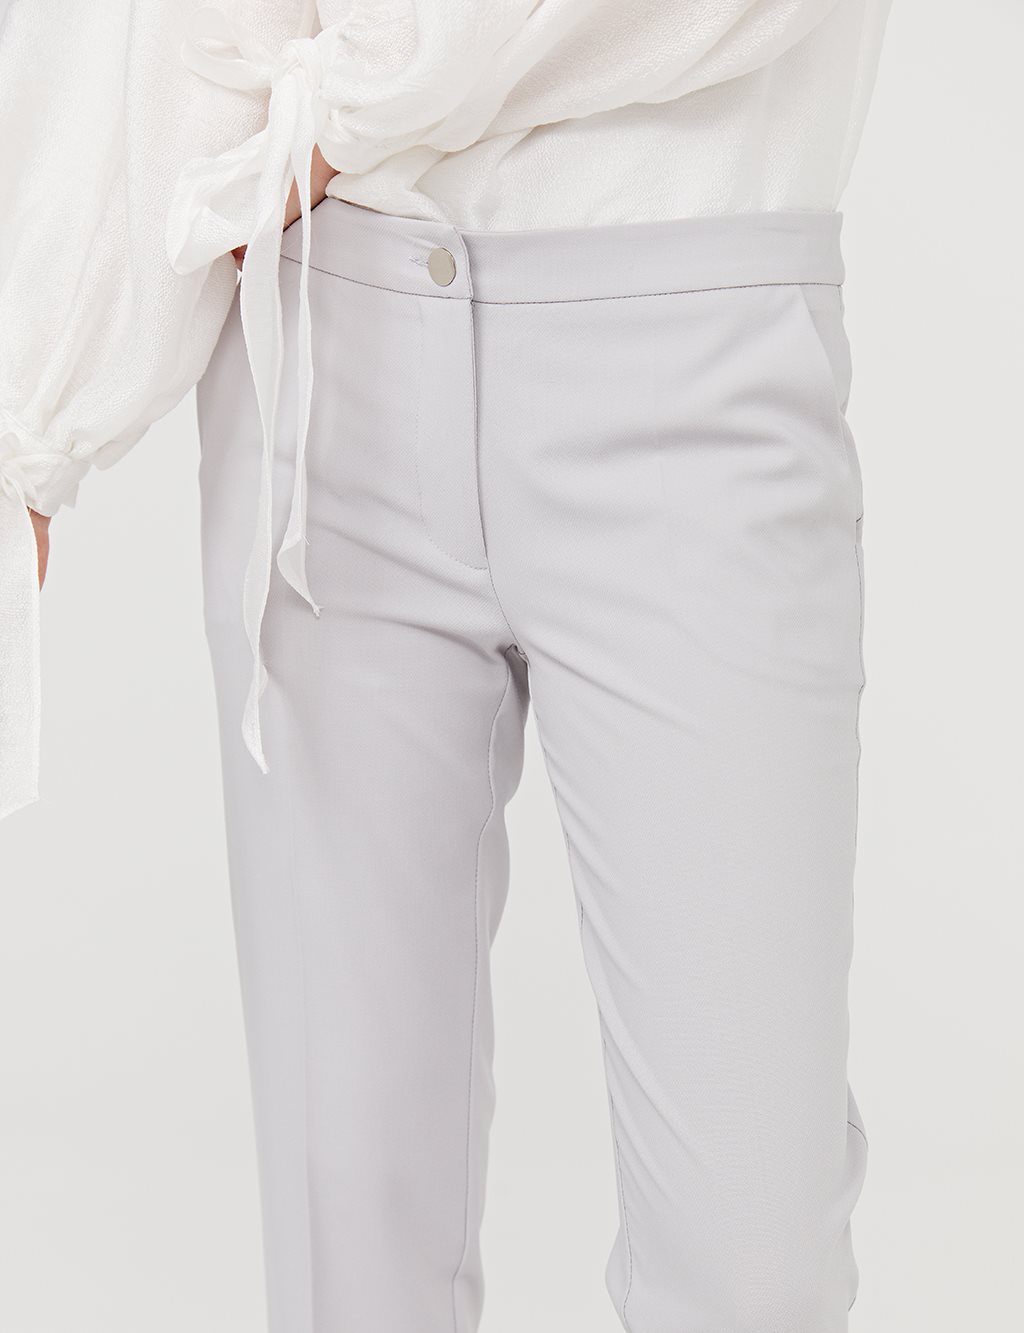 Basic Tight Pants SZ 19501 Gray